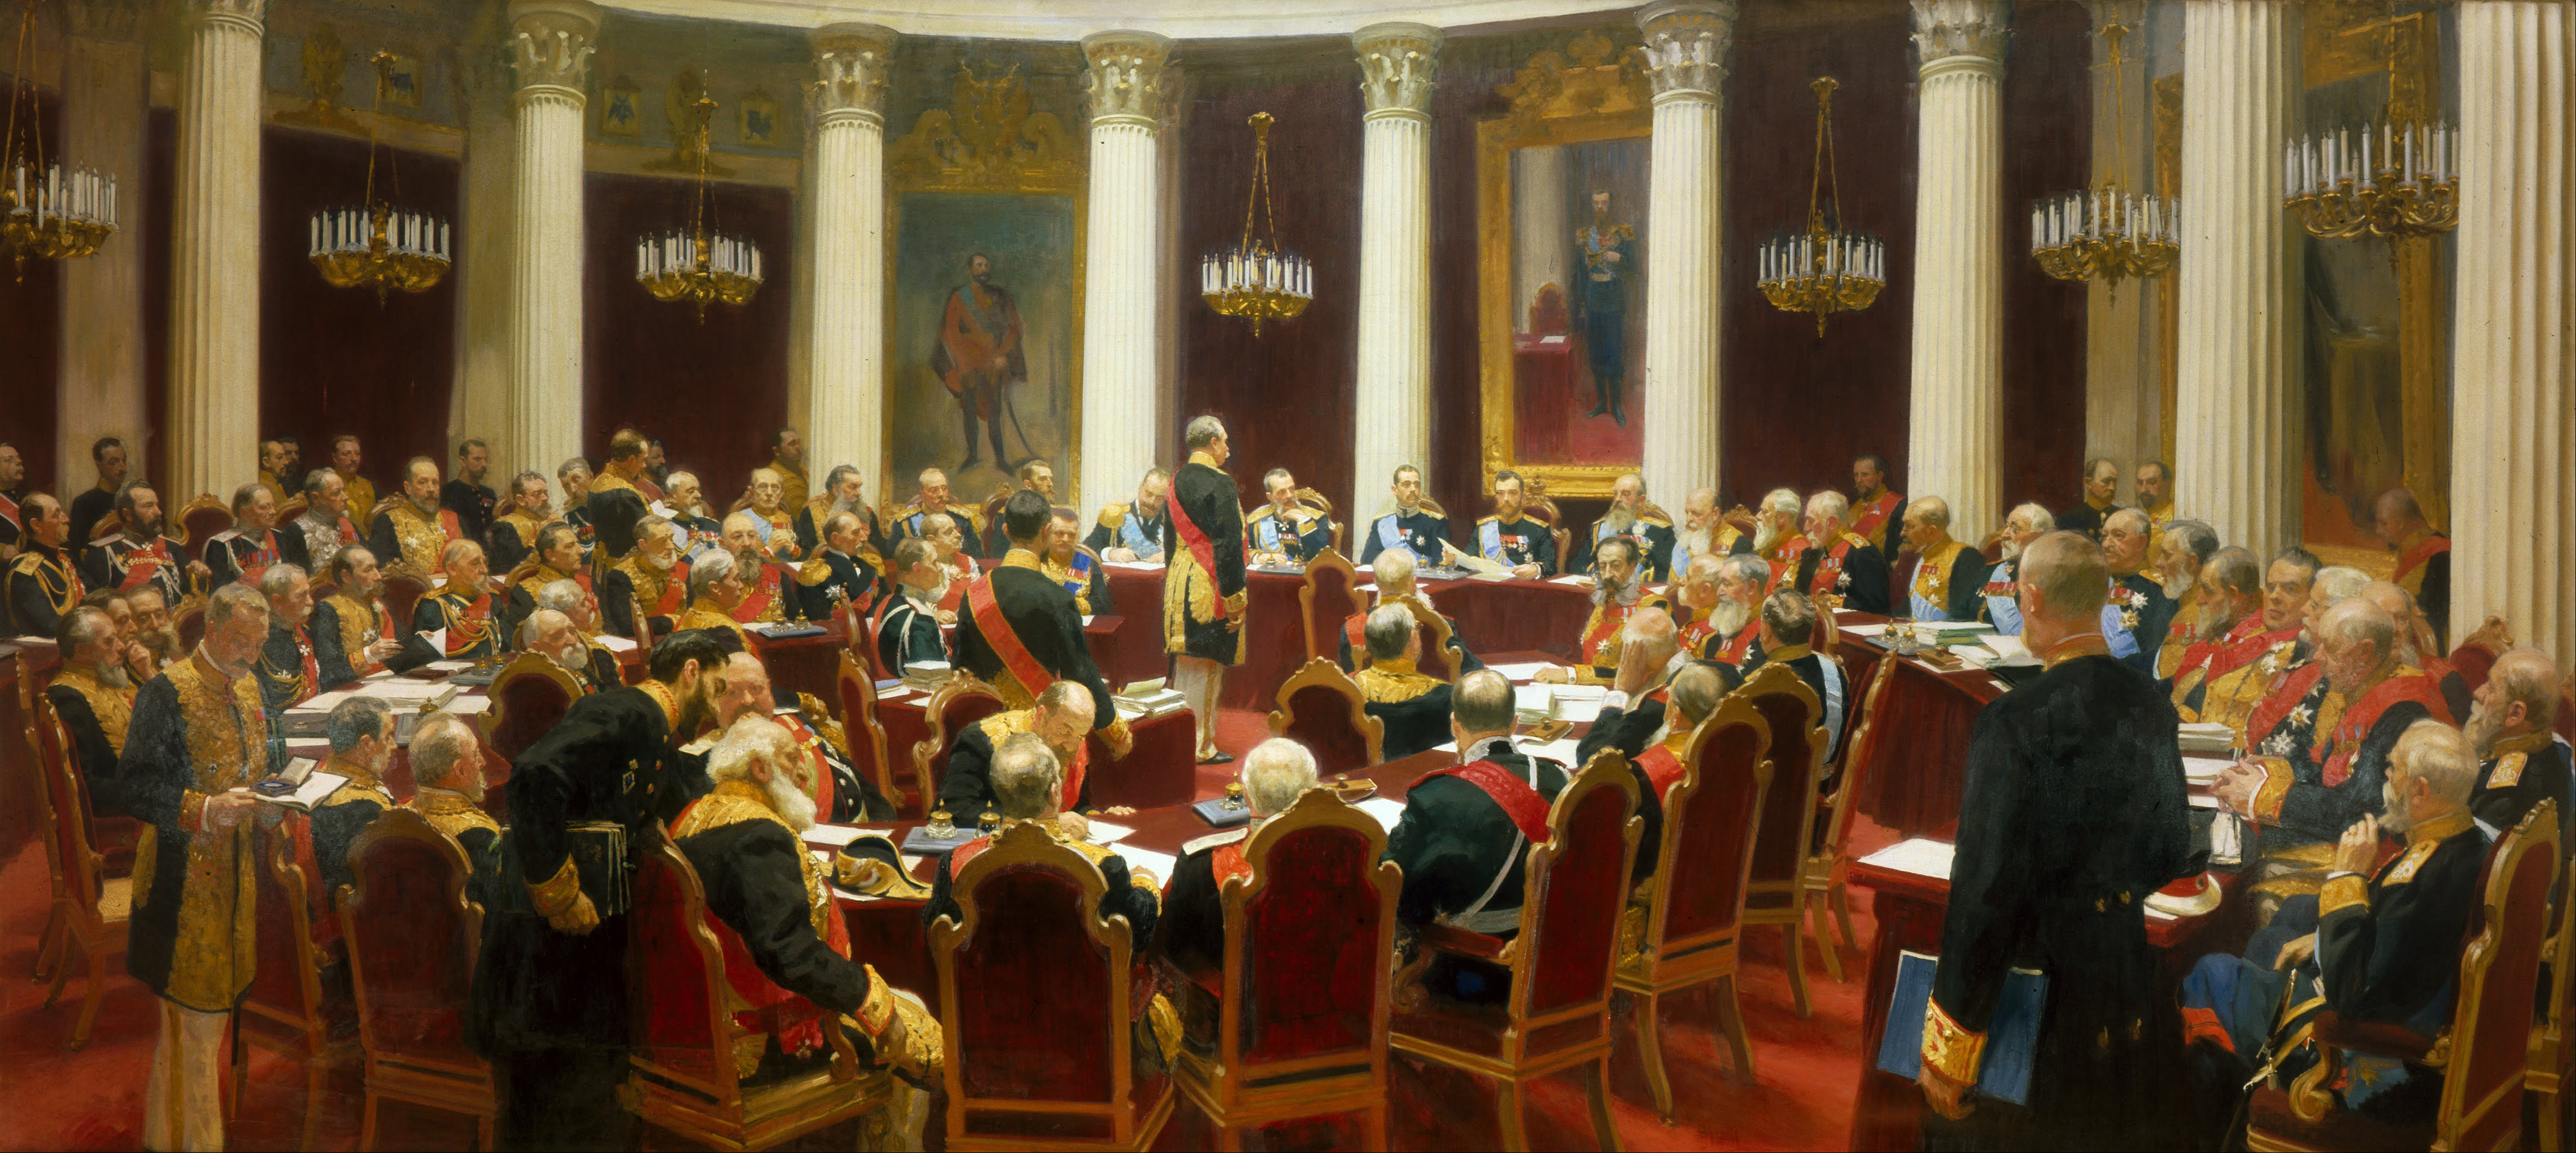 Репин И.Е. Заседание Государственного совета